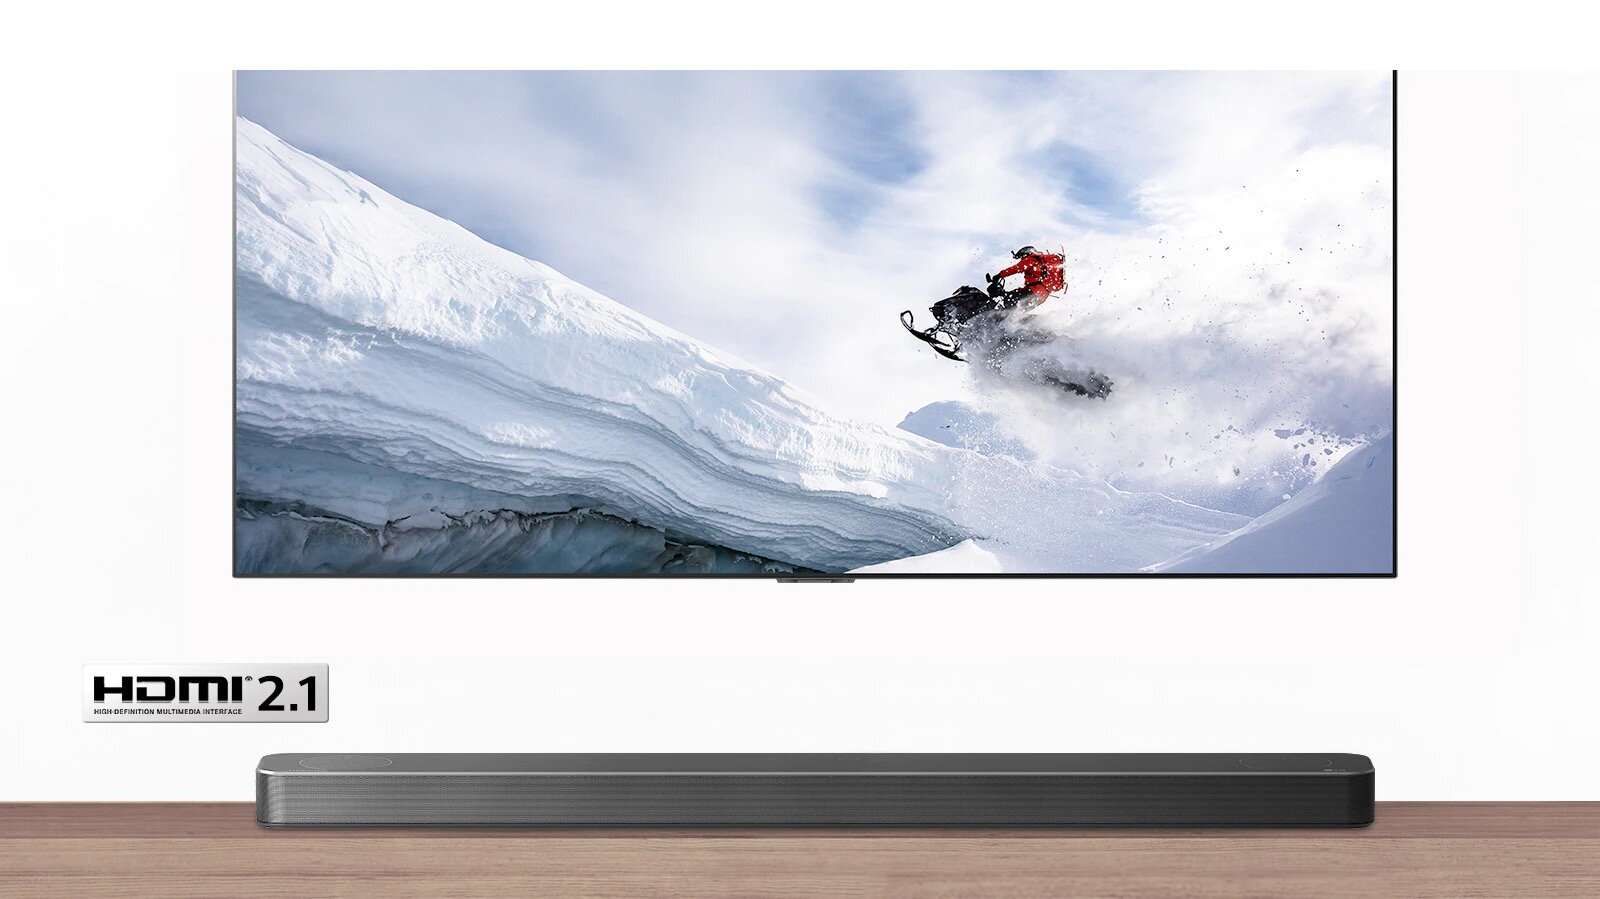 Soundbar LG SN8Y 440W 3.1.2ch Hi-Res Dolby Atmos widok od przodu na soundbar znajdujący się pod telewizorem